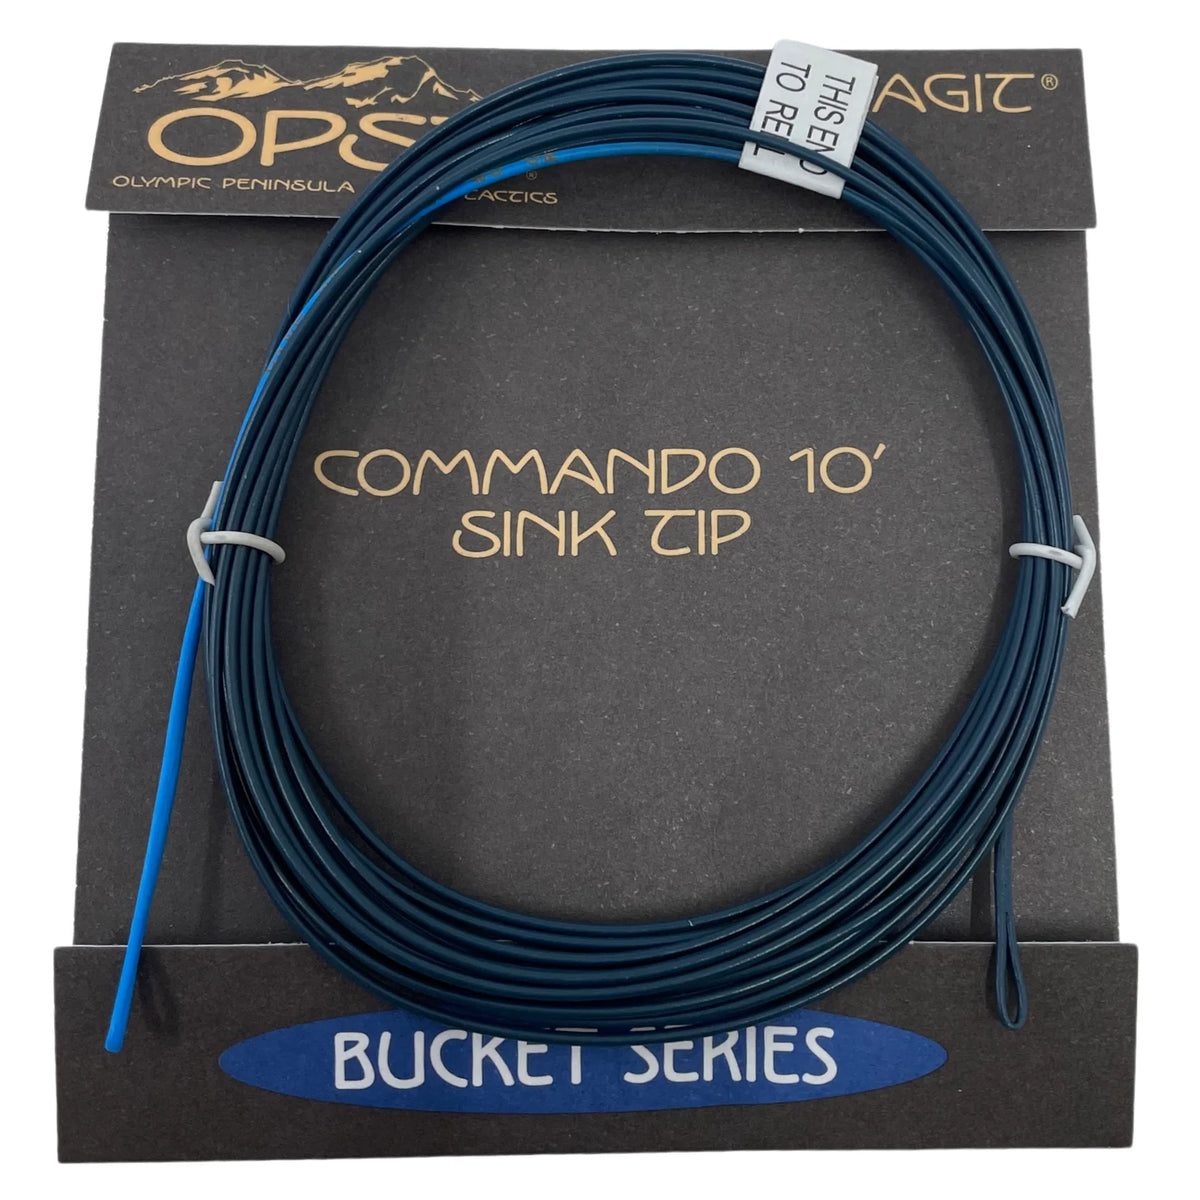 OPST Commando Sink Tip Bucket Series